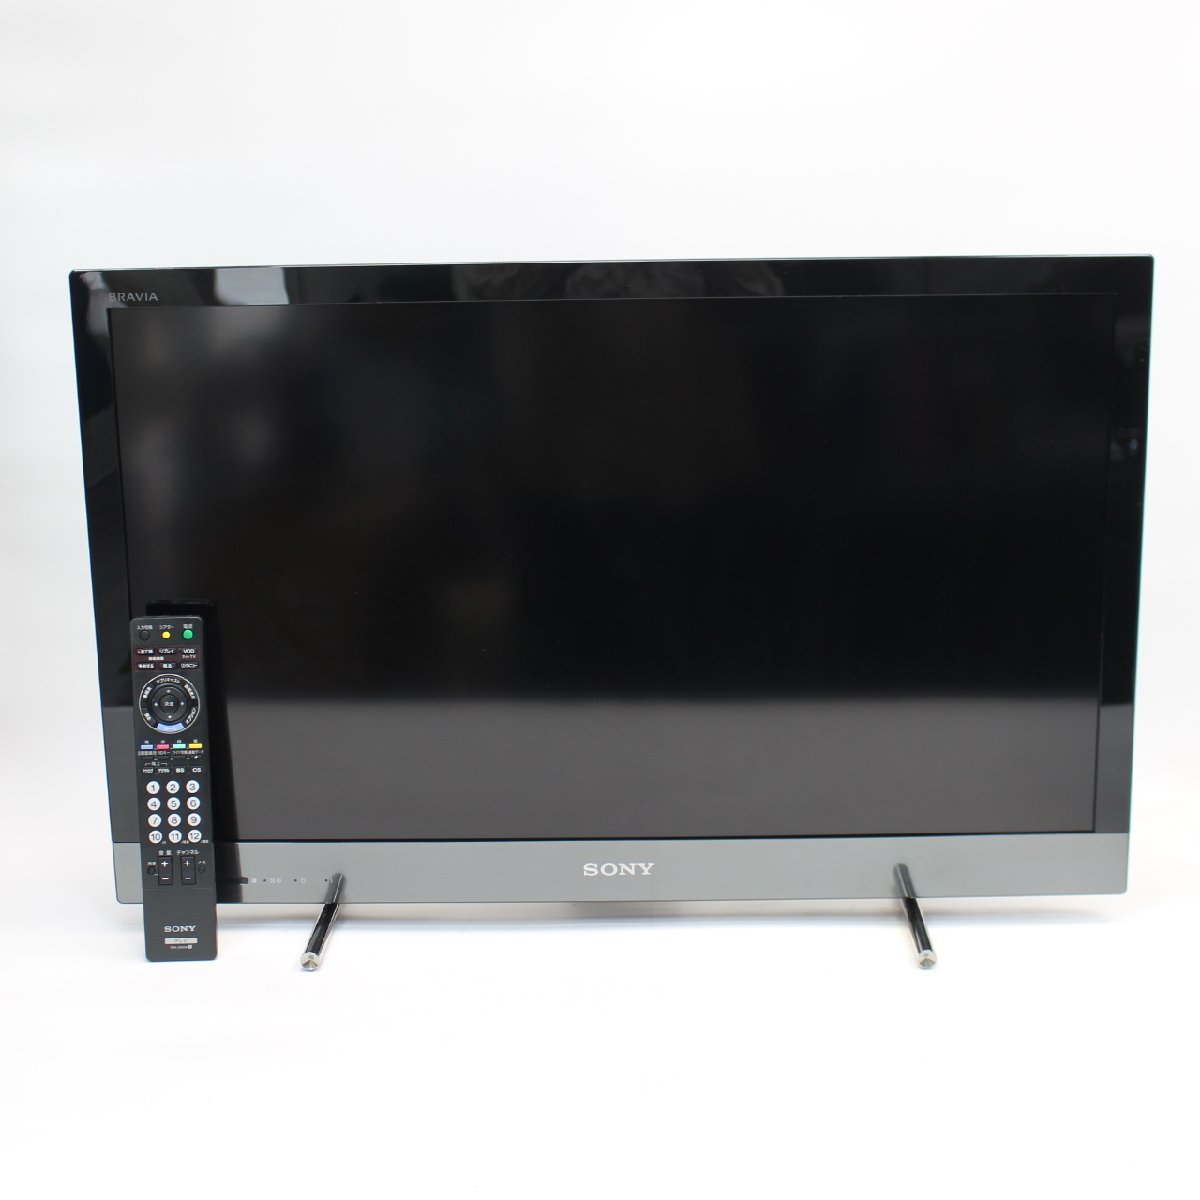 東京都狛江市にて ソニー 液晶テレビ KDL-32EX420 2012年製 を出張買取させて頂きました。